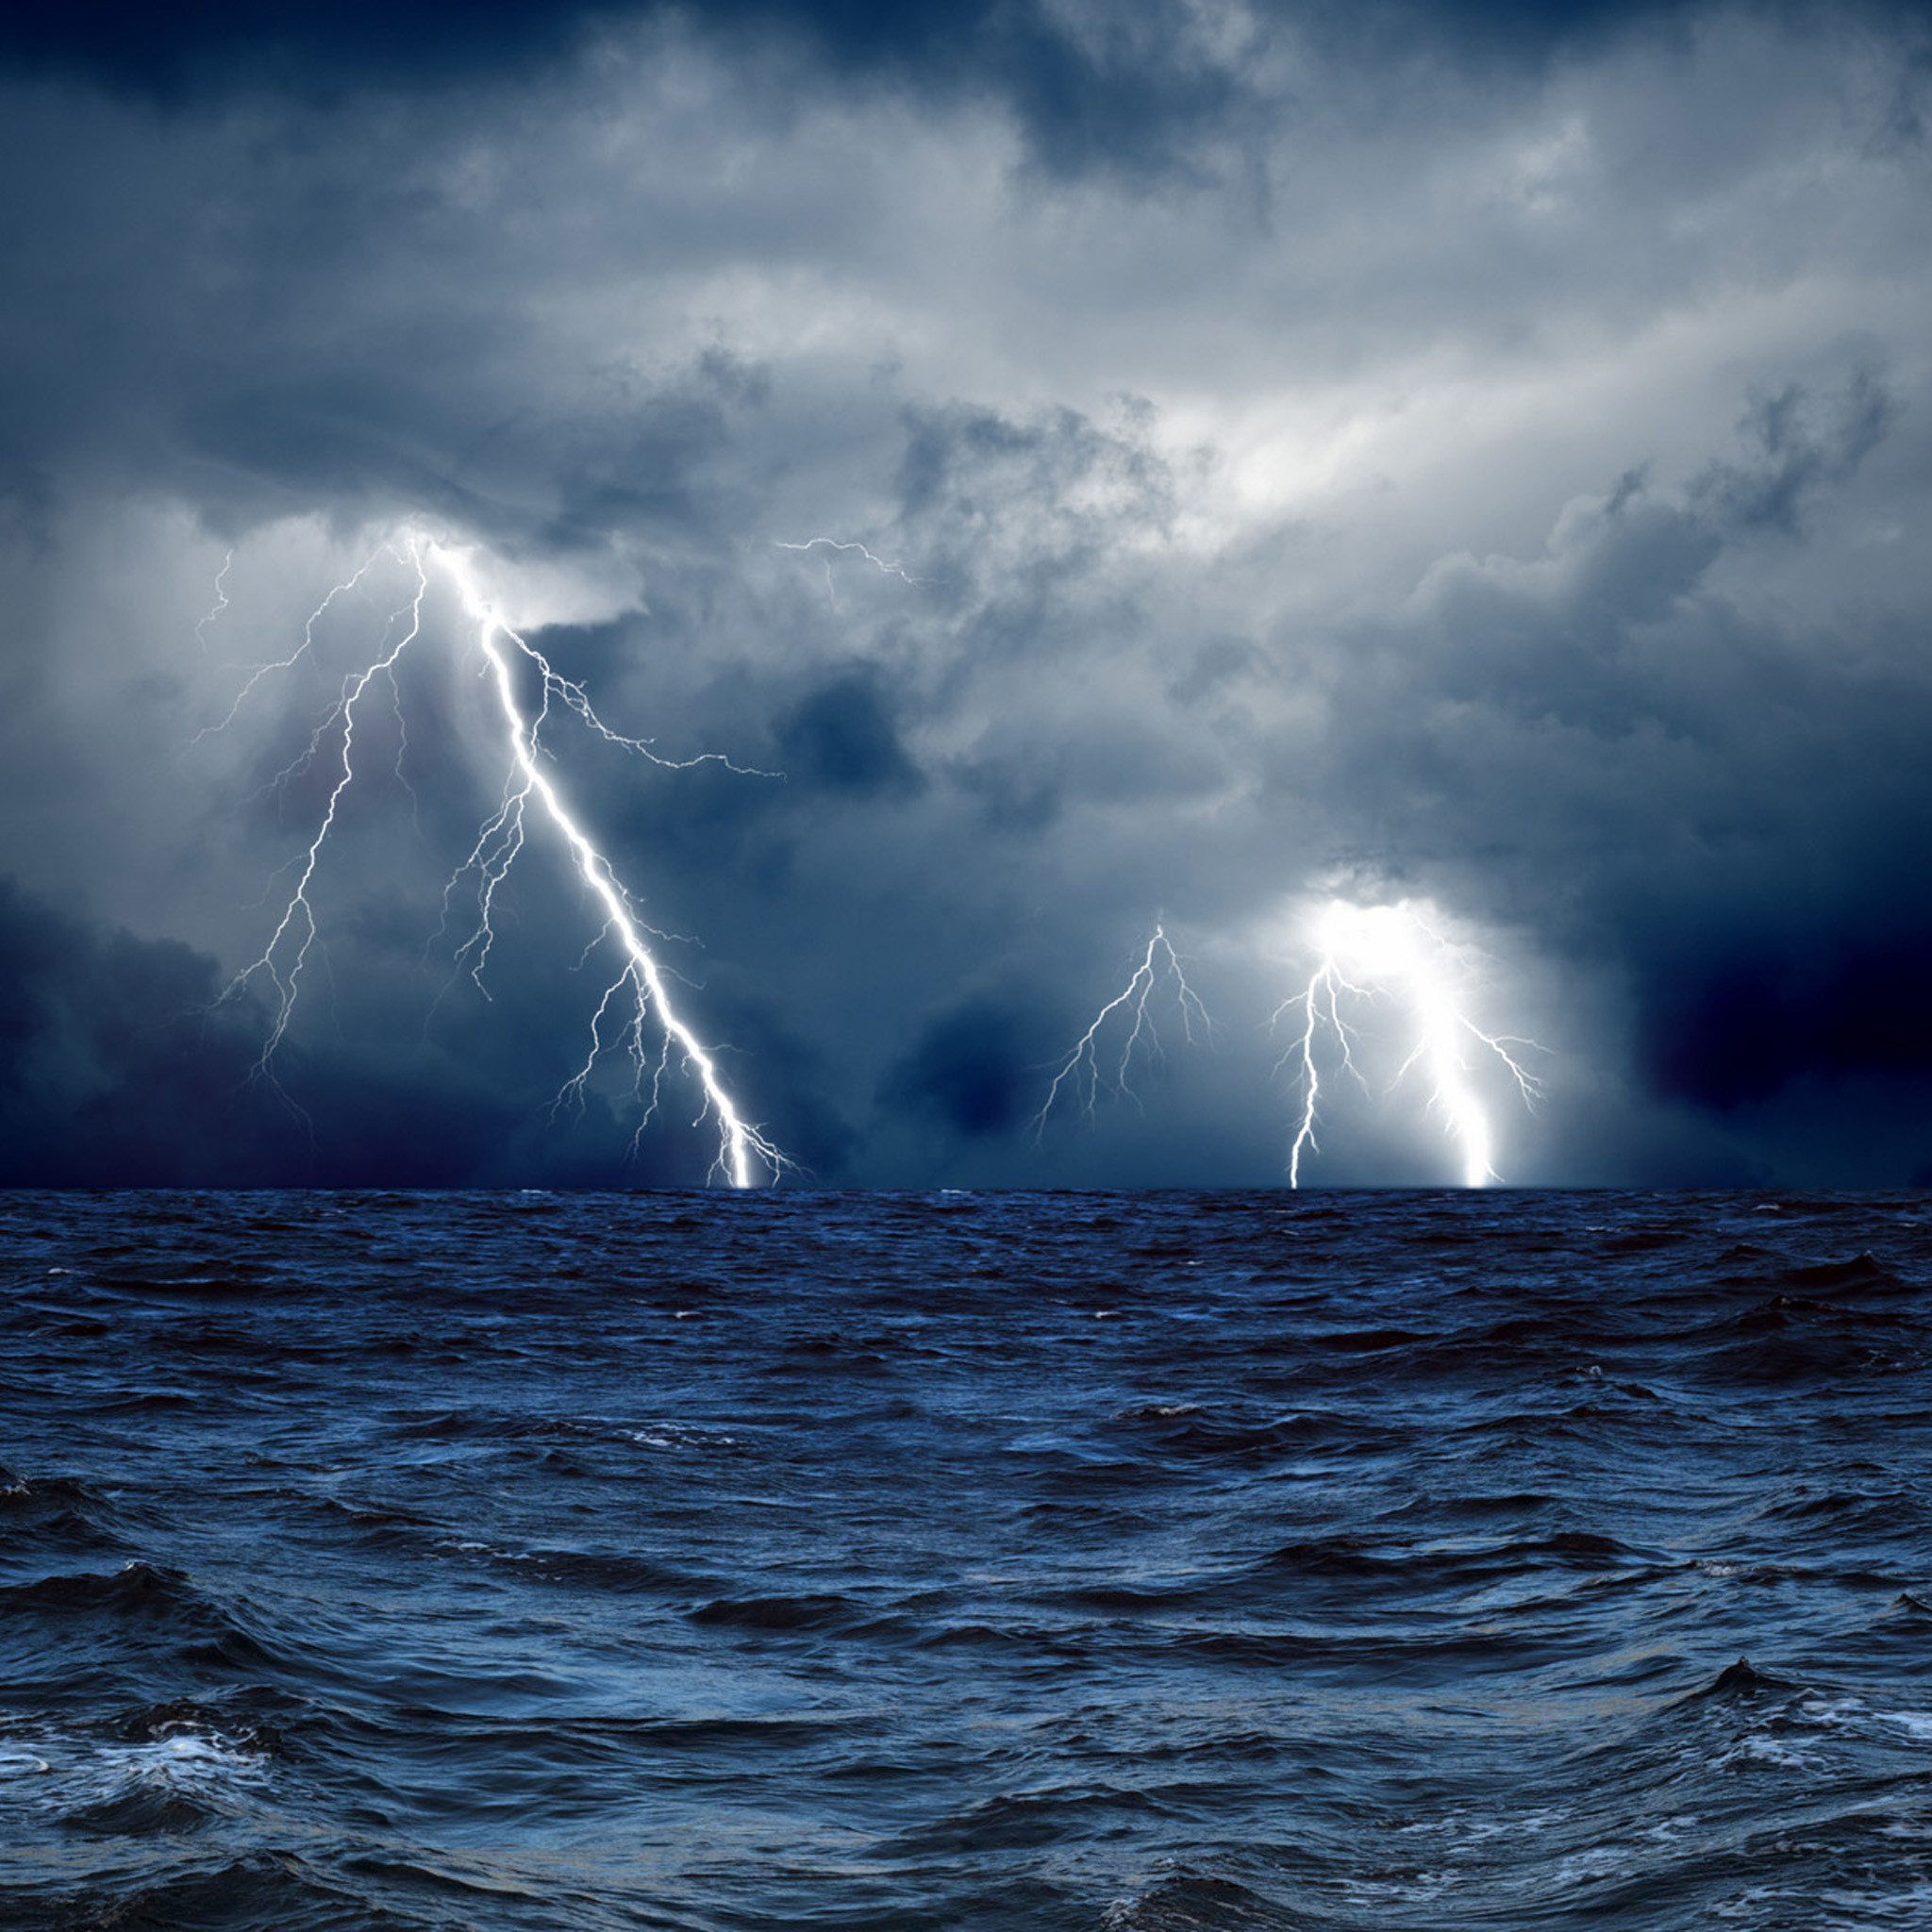 2048x2048 Nautical lightning storm iPad Air 2 Wallpapers